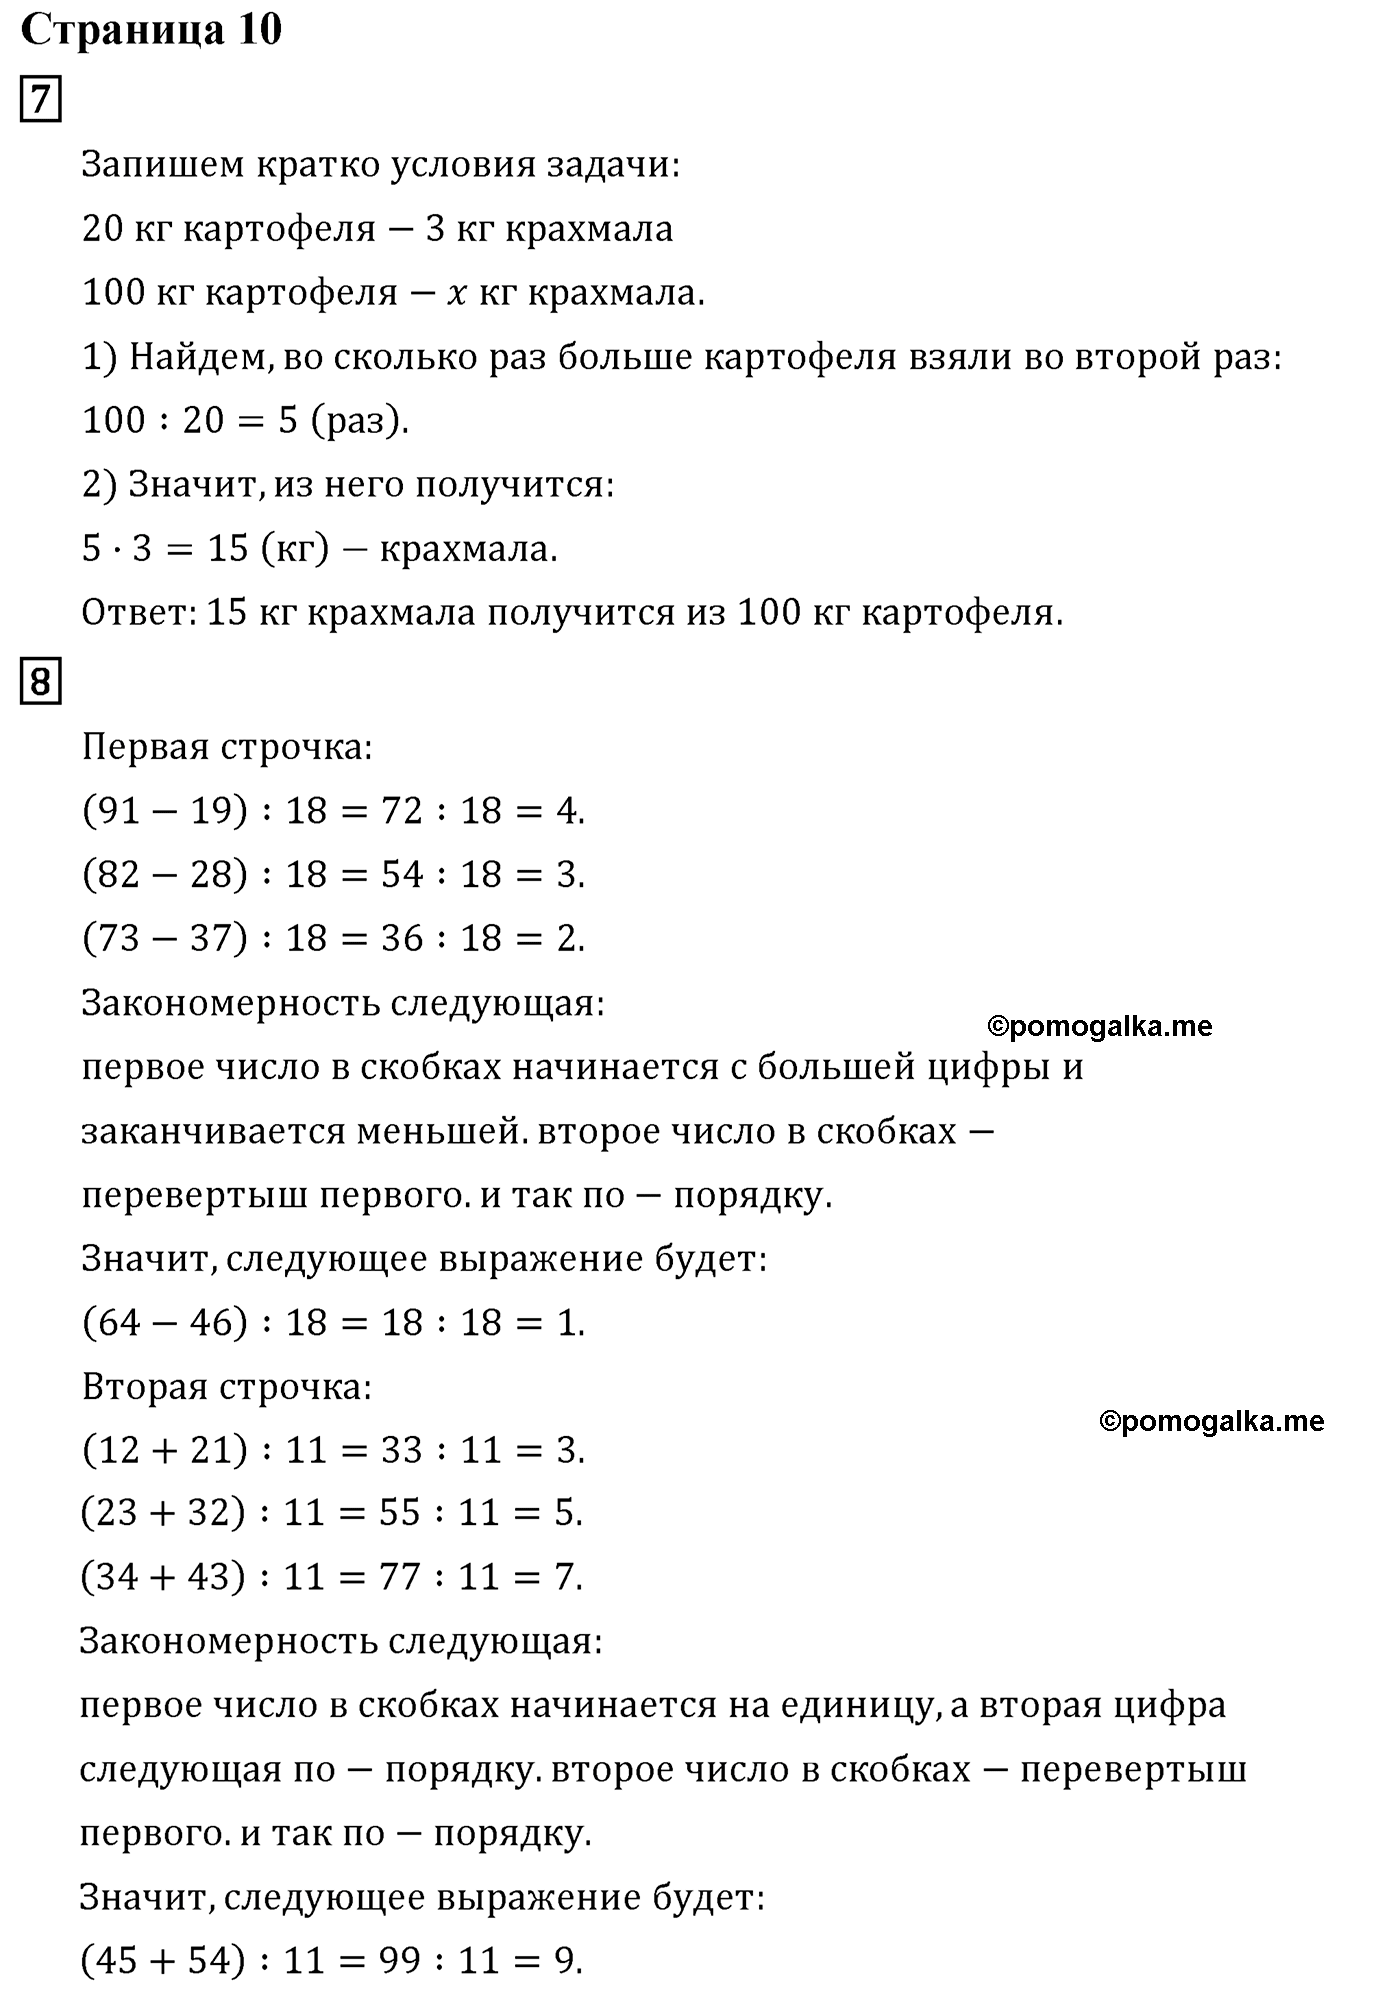 Страница №10 Часть 1 математика 4 класс Дорофеев